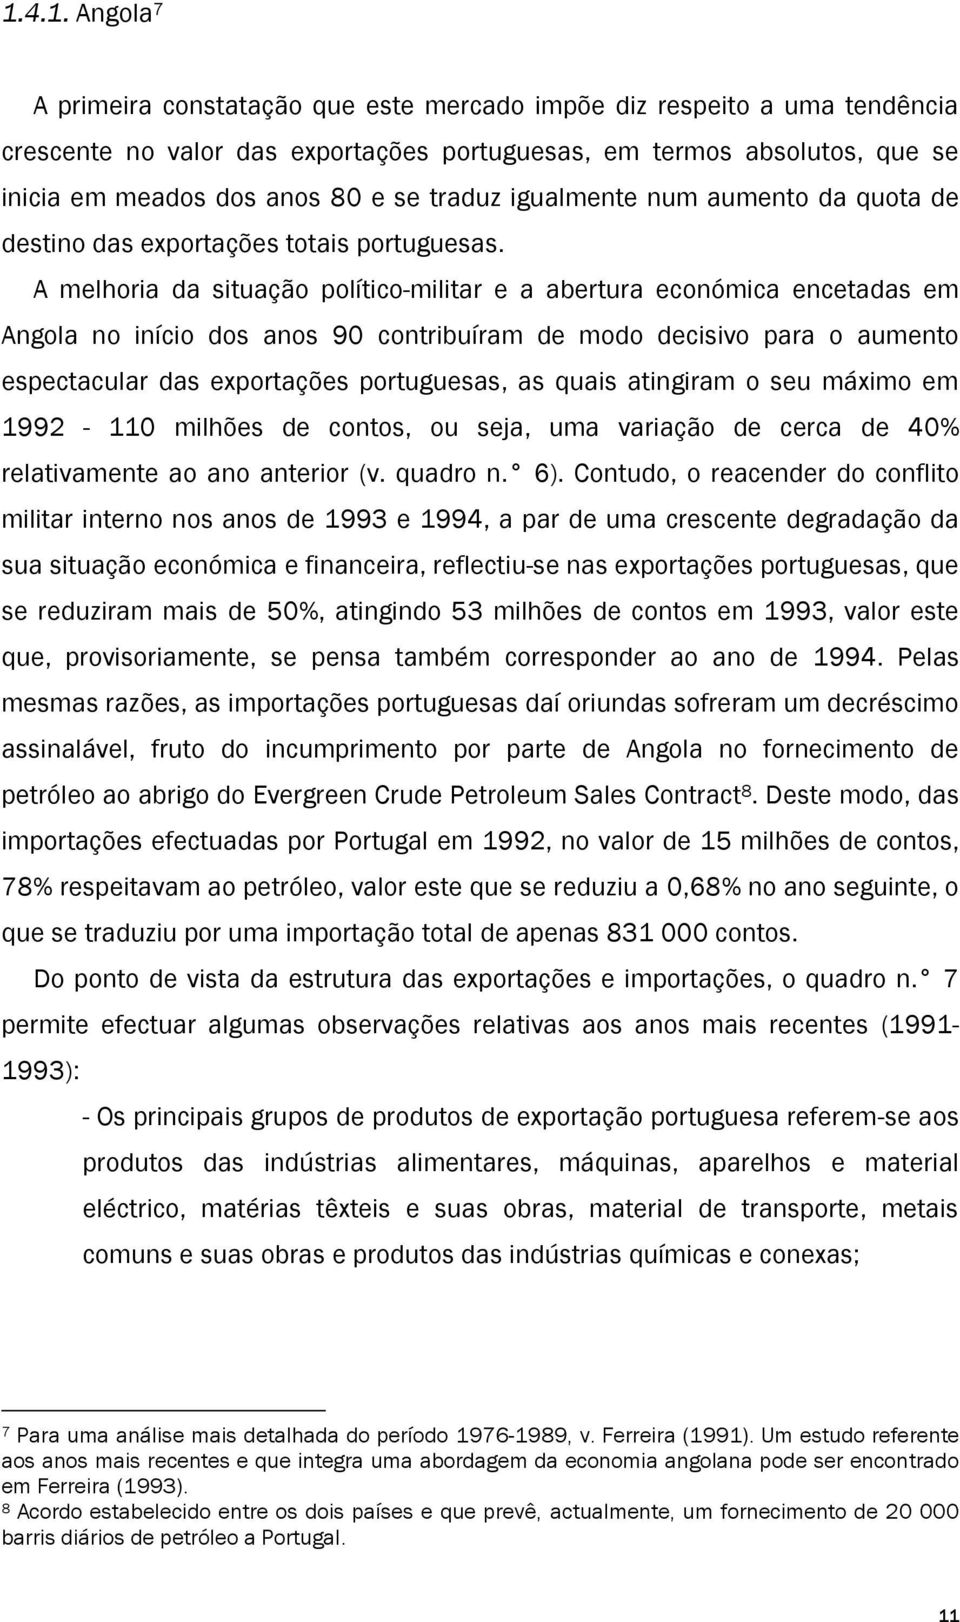 A melhoria da situação político-militar e a abertura económica encetadas em Angola no início dos anos 90 contribuíram de modo decisivo para o aumento espectacular das exportações portuguesas, as